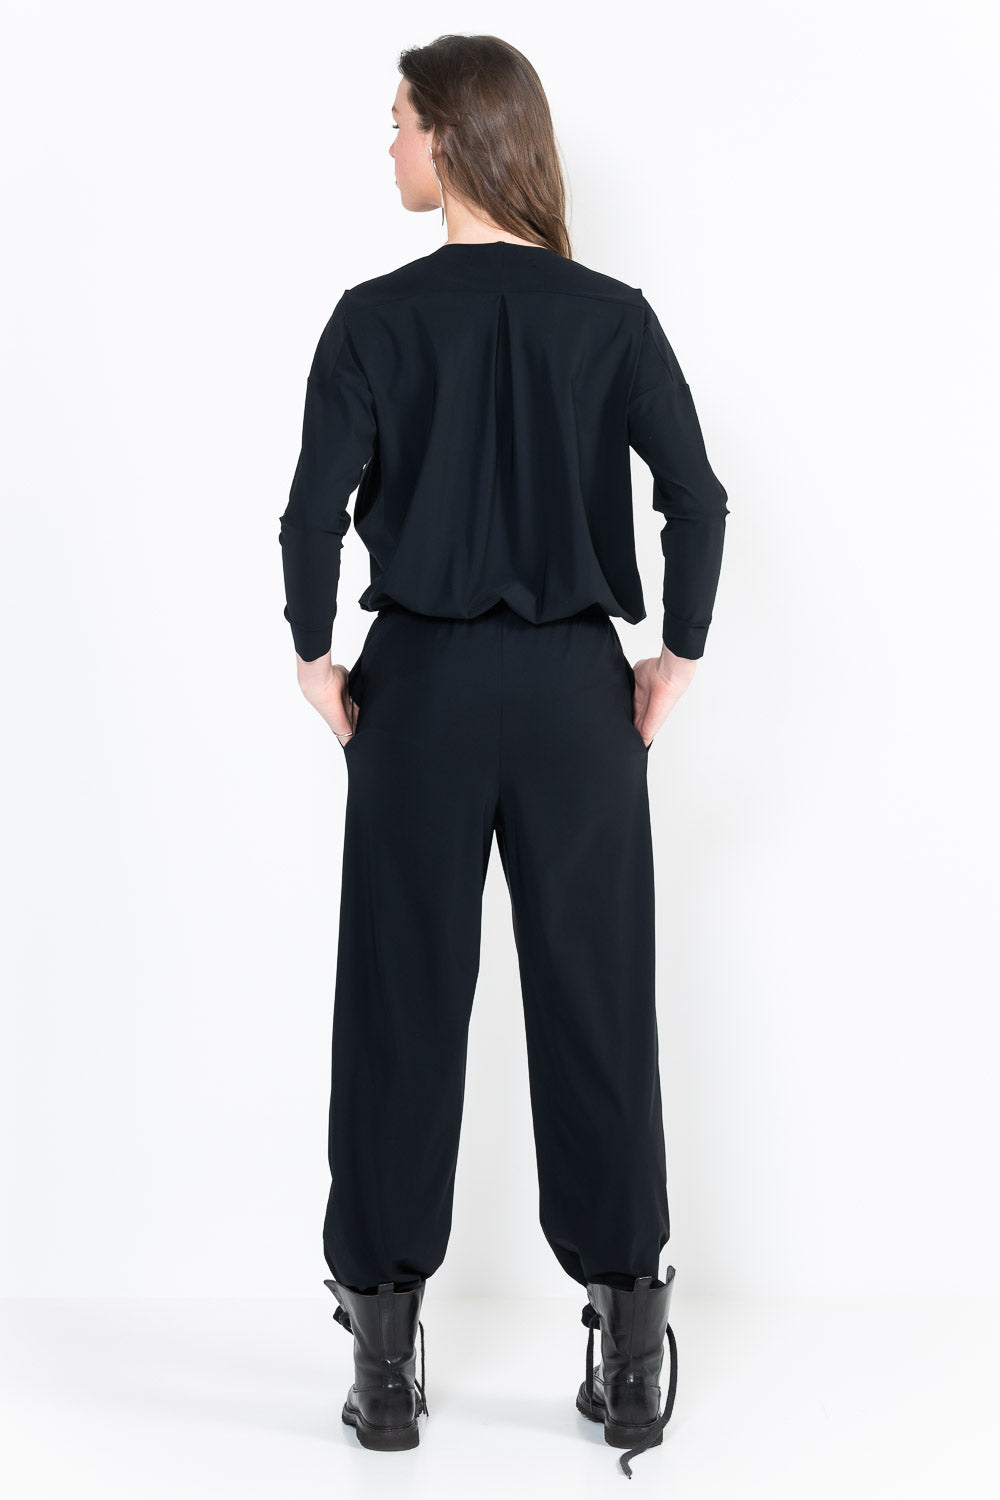 L76 2-pocket blouse jumpsuit